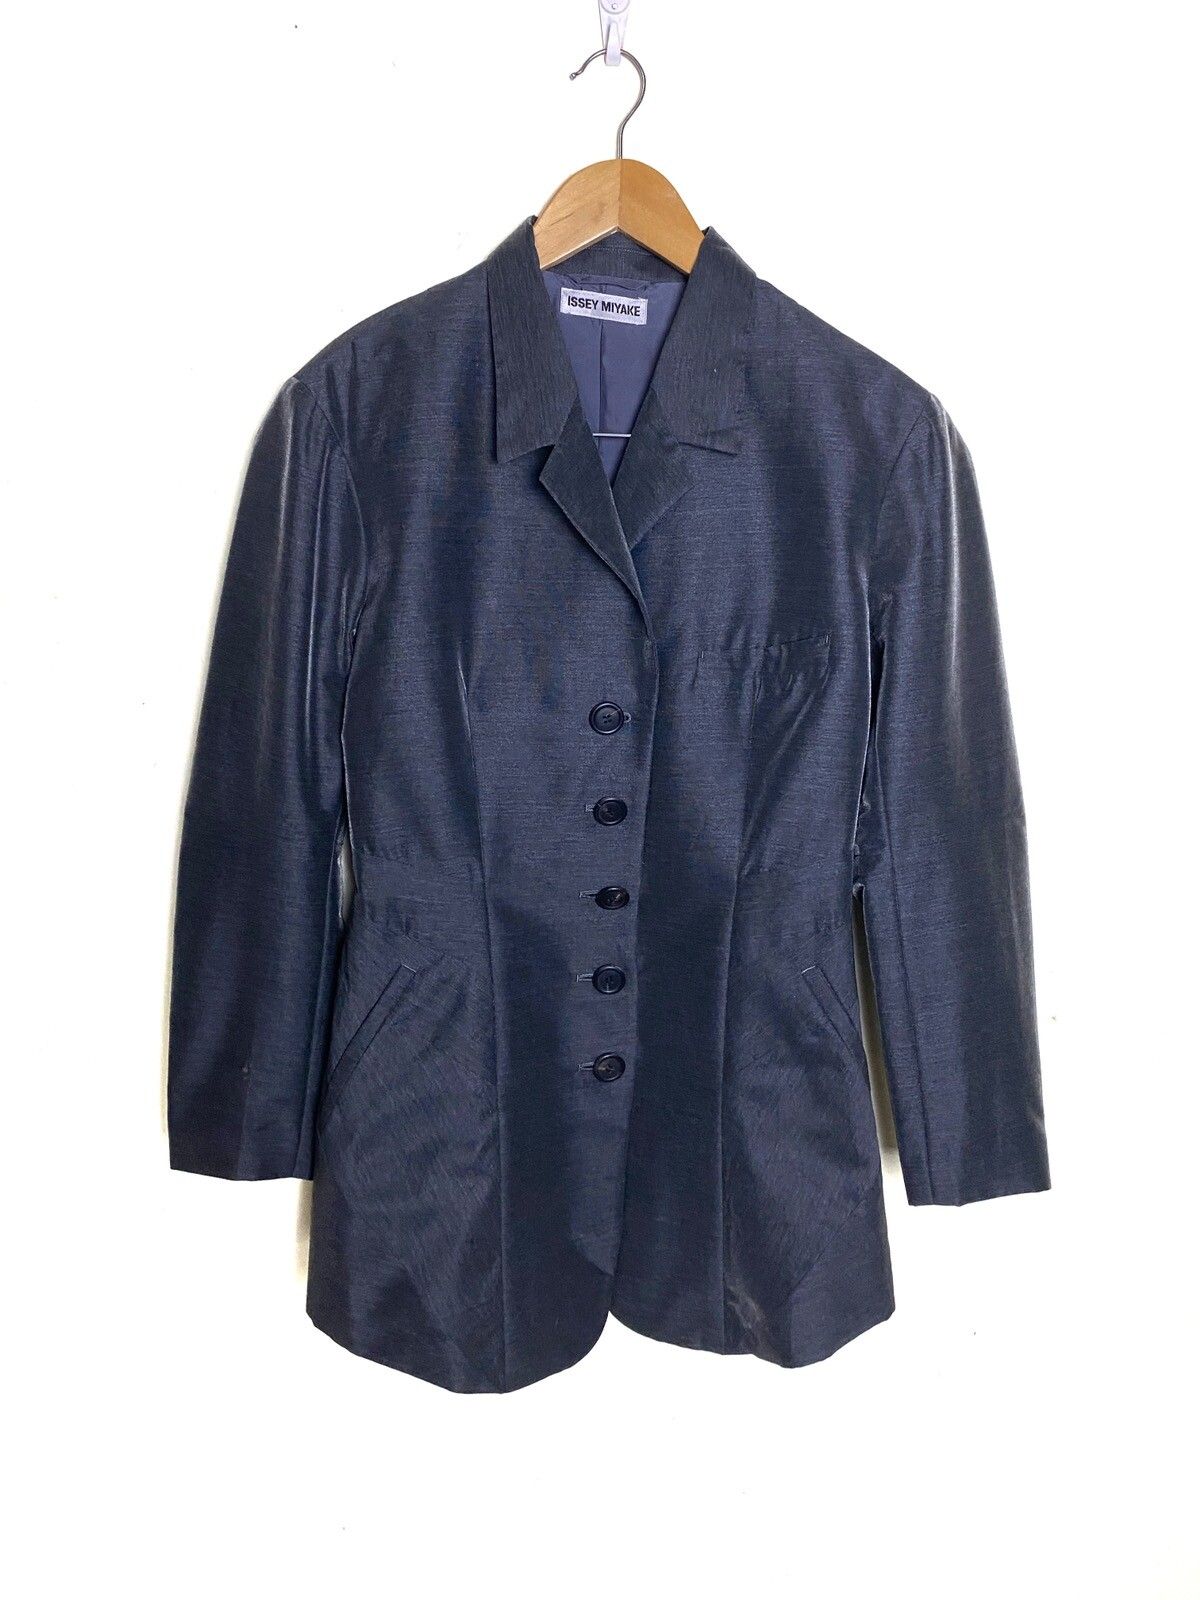 Vintage Issey Miyake Jacket - 1